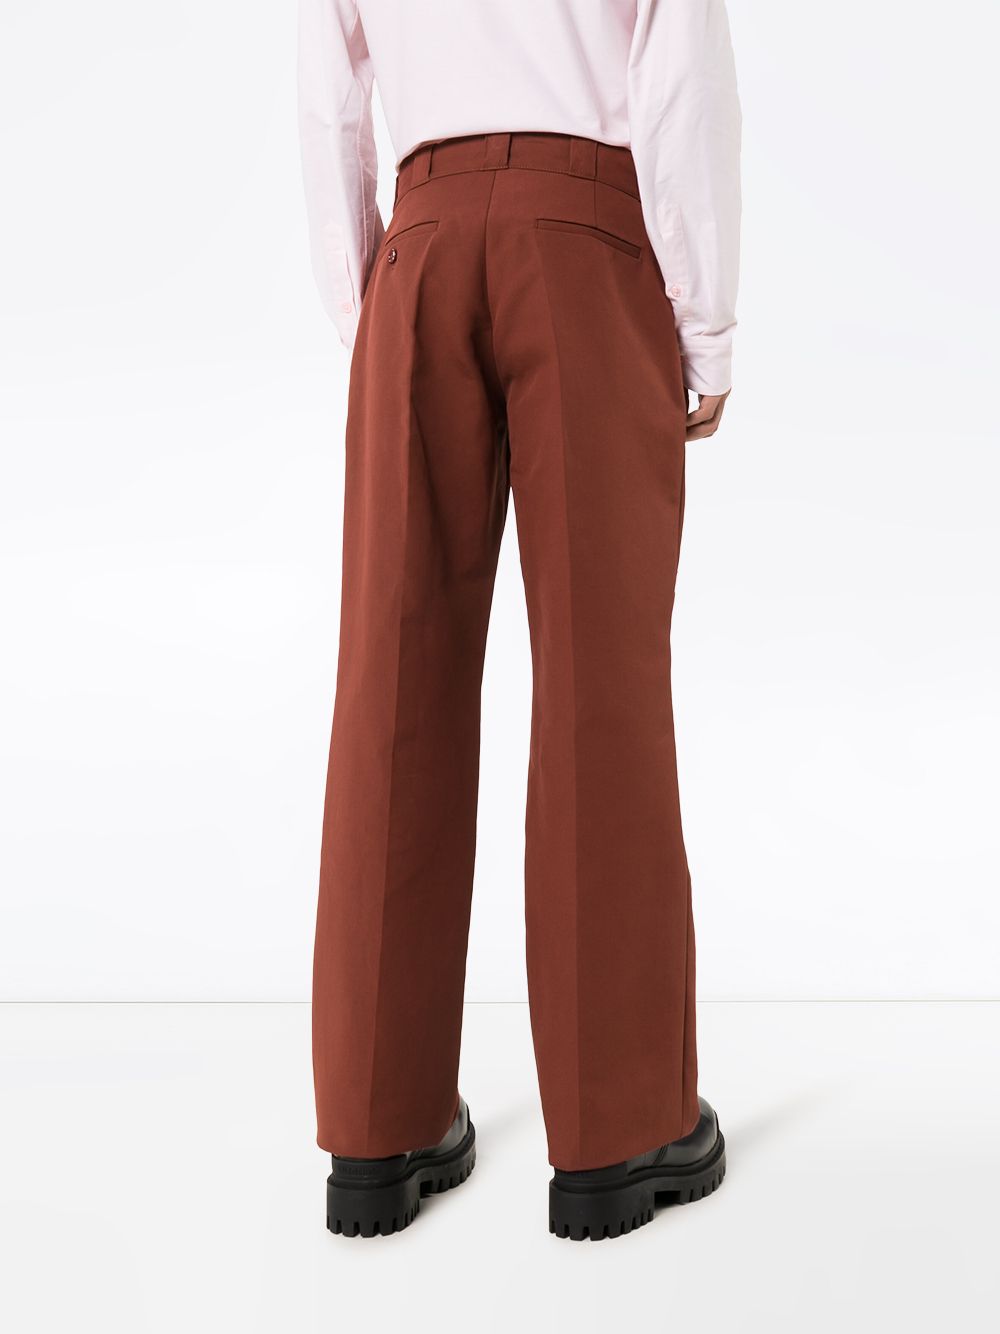 фото Raf simons прямые брюки с вышивкой